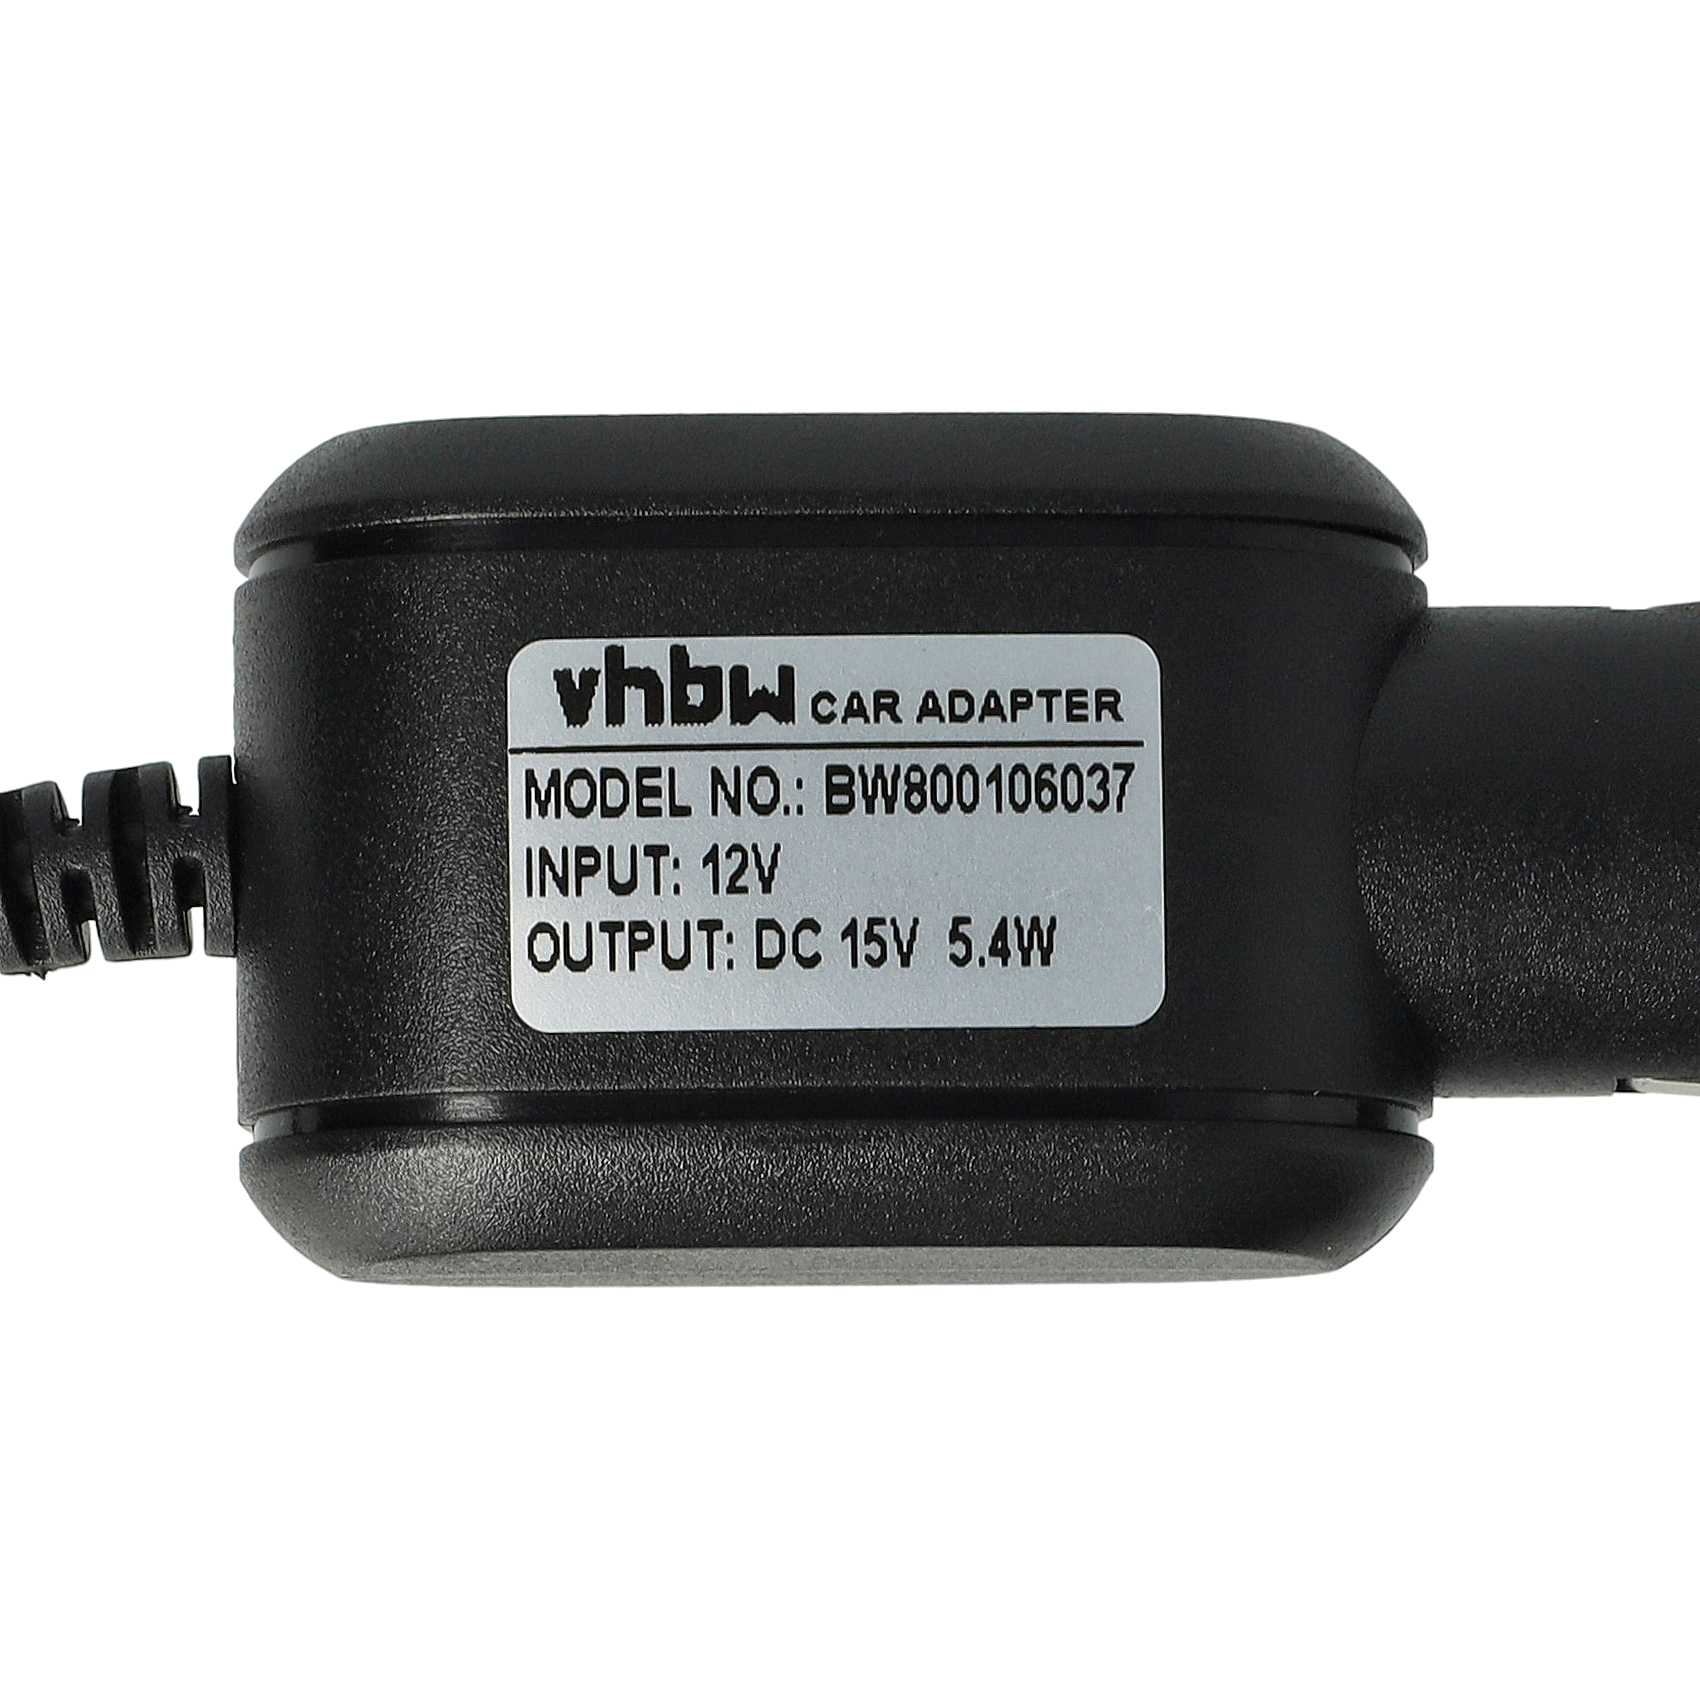 KFZ Kabel passend für Philips, Philips / Norelco HS8020 Rasierer u.a. - 12V KFZ Ladegerät